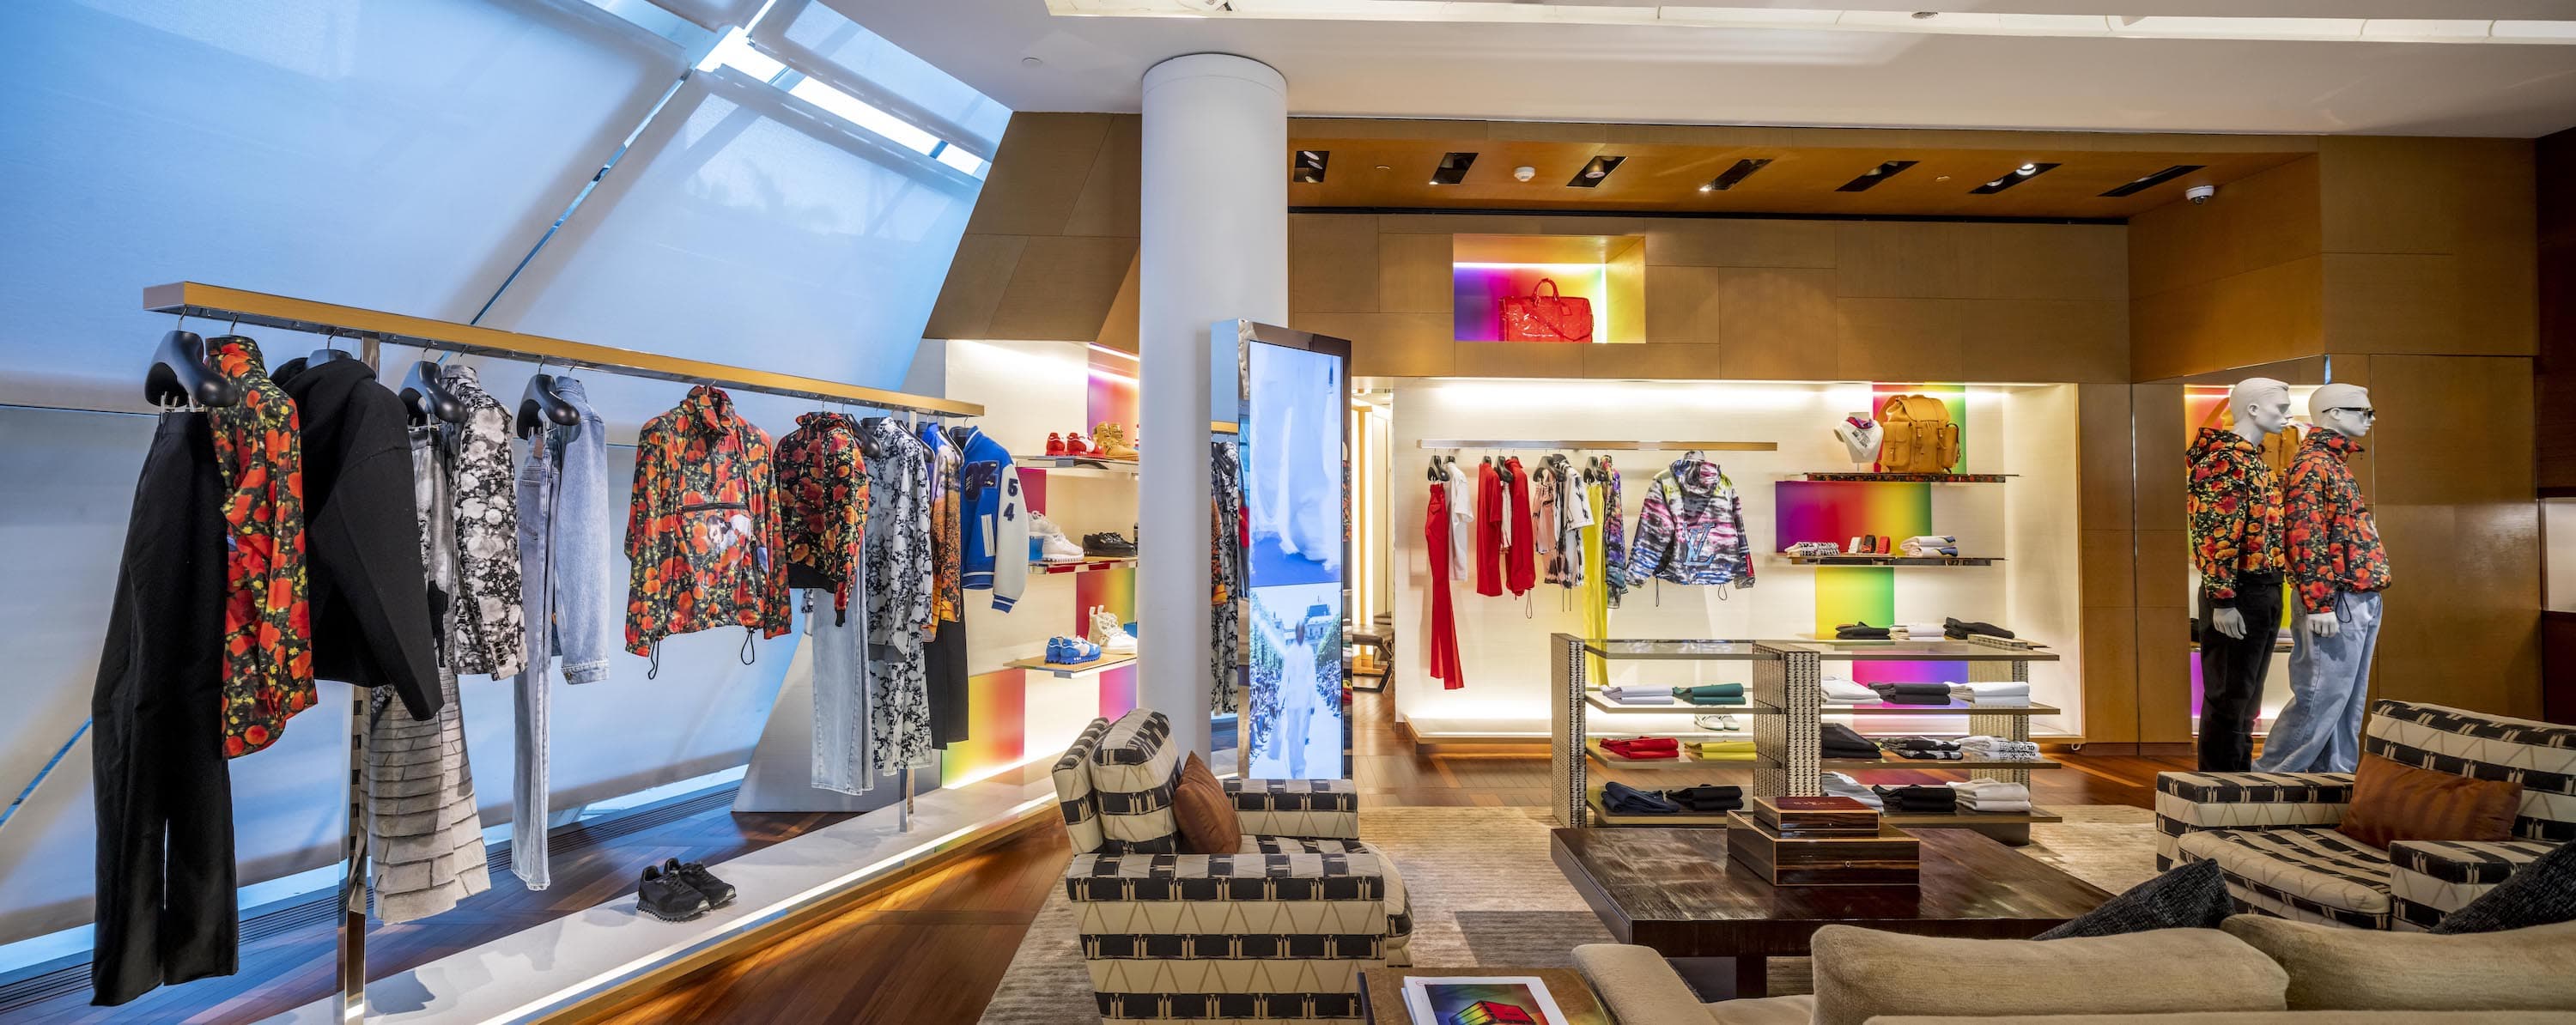 Virgil Abloh's provocative debut for Louis Vuitton has hit Singapore